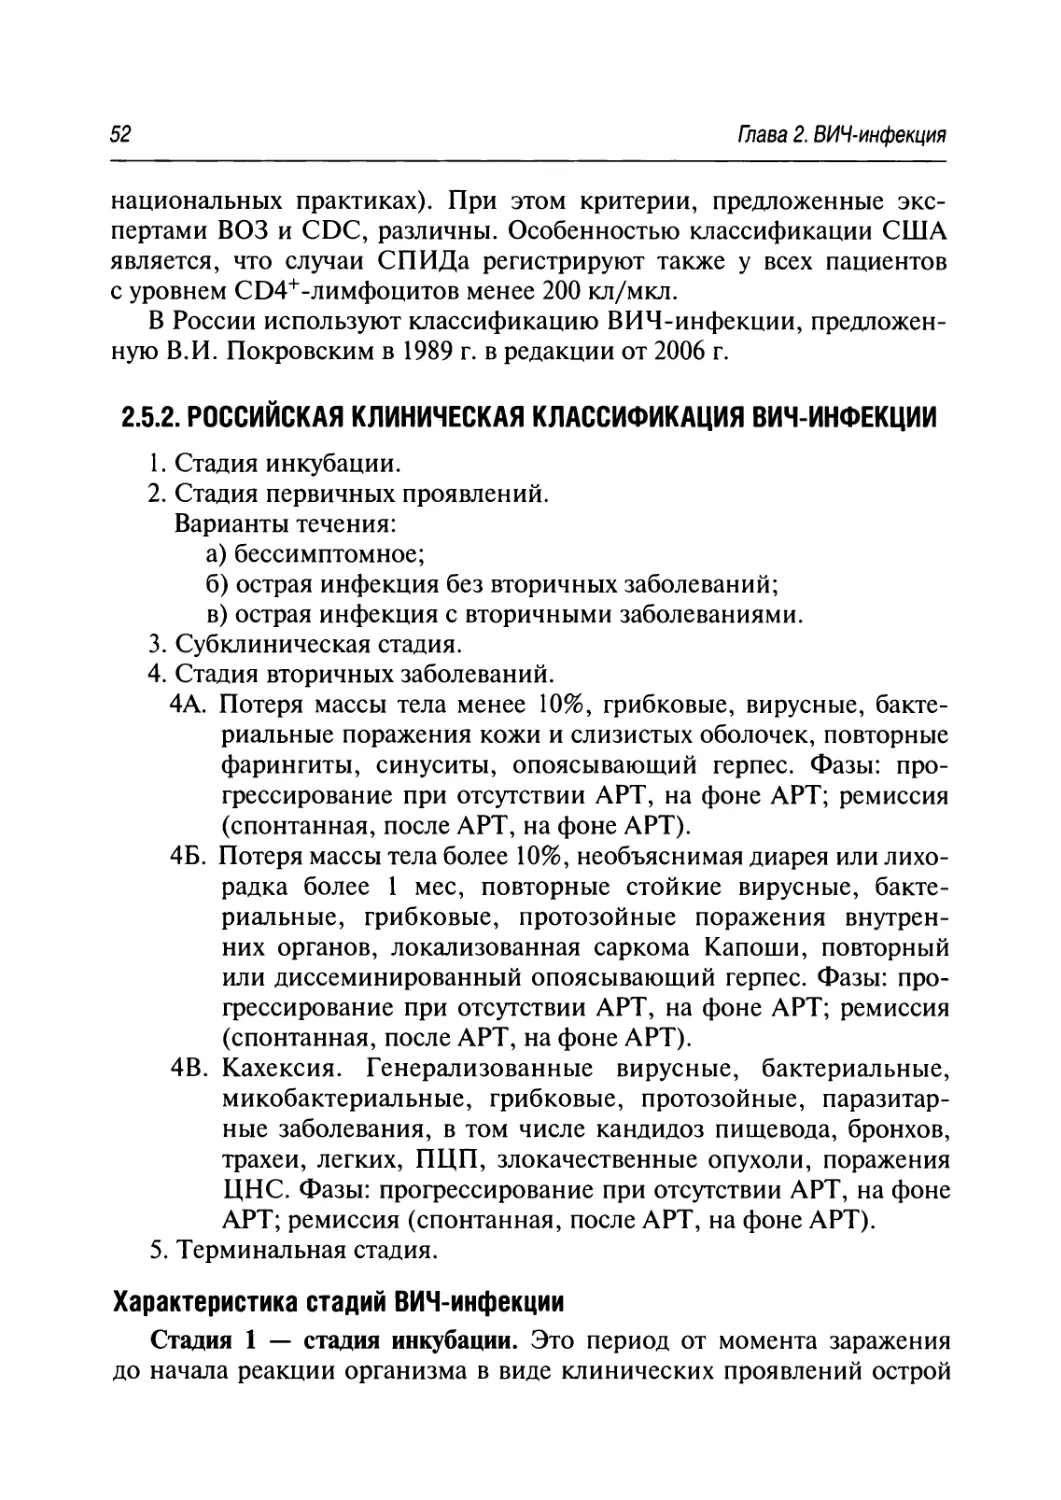 2.5.2. Российская клиническая классификация ВИЧ-инфекции